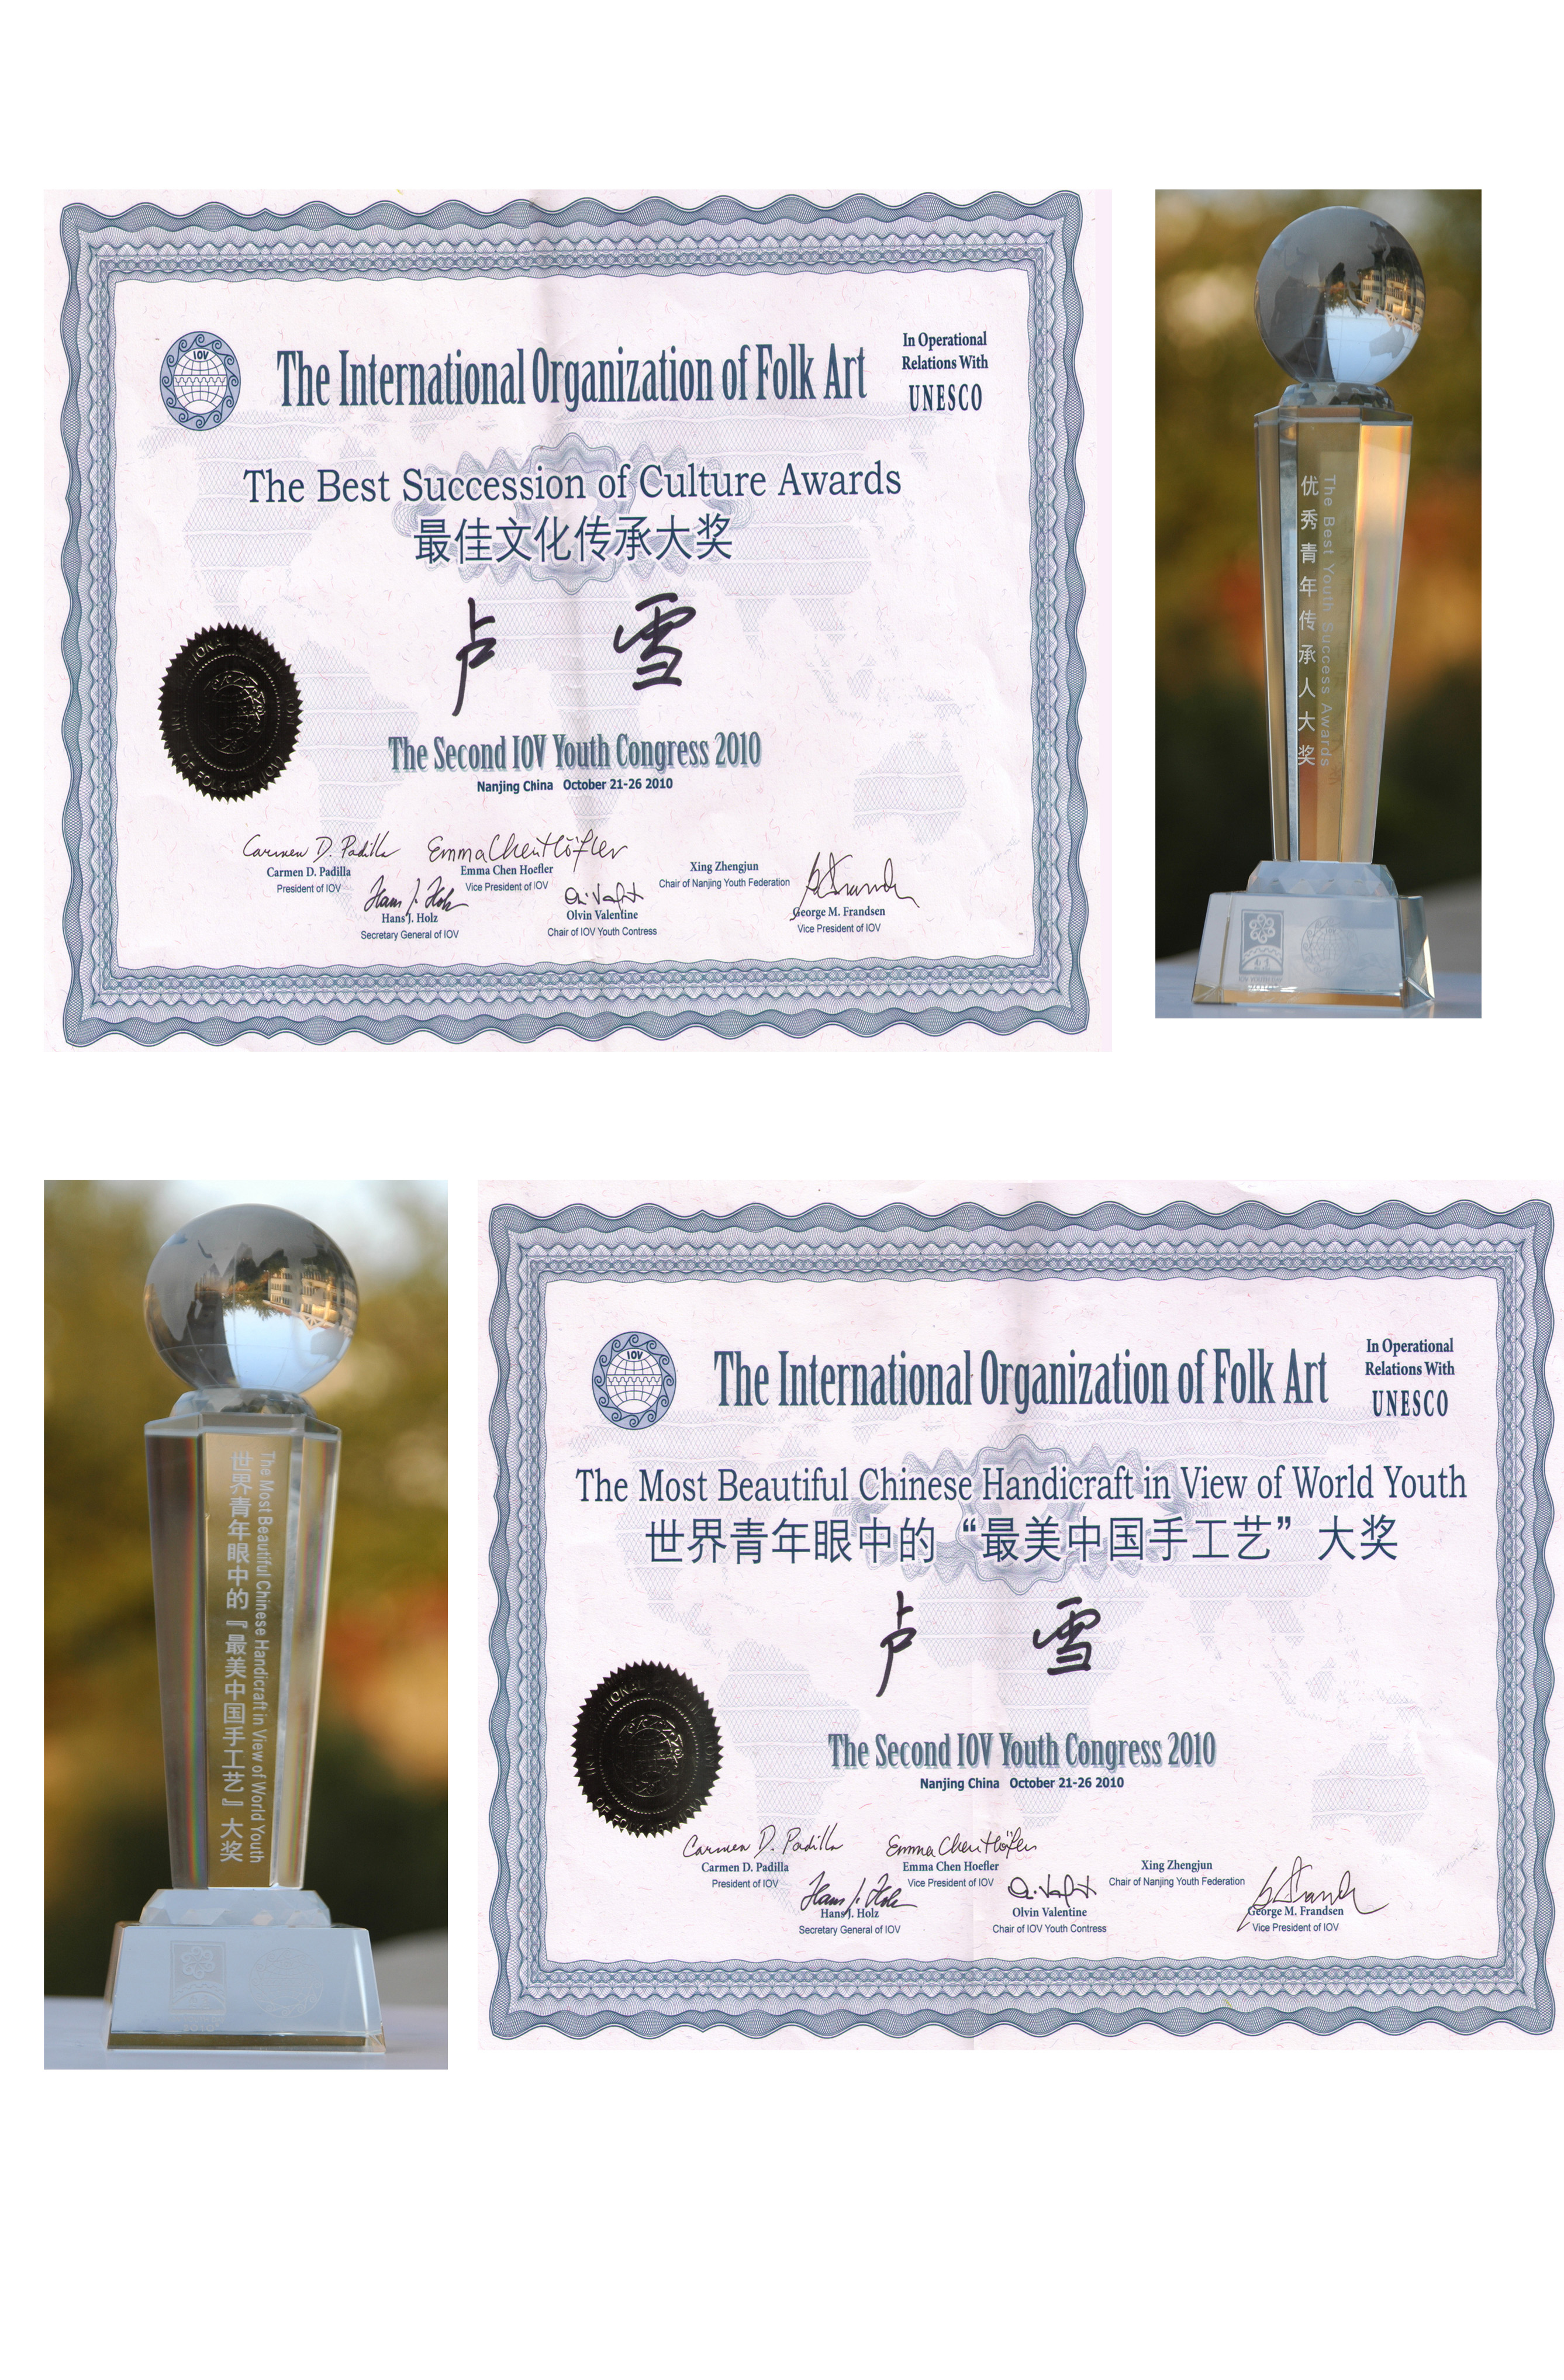 2010年10月23日参加联合国教科文民间组织IOV在南京举办的第二届世界青年大会上获得IOV“最佳文化传承大奖”和世界青年眼中“最美手工艺大奖”